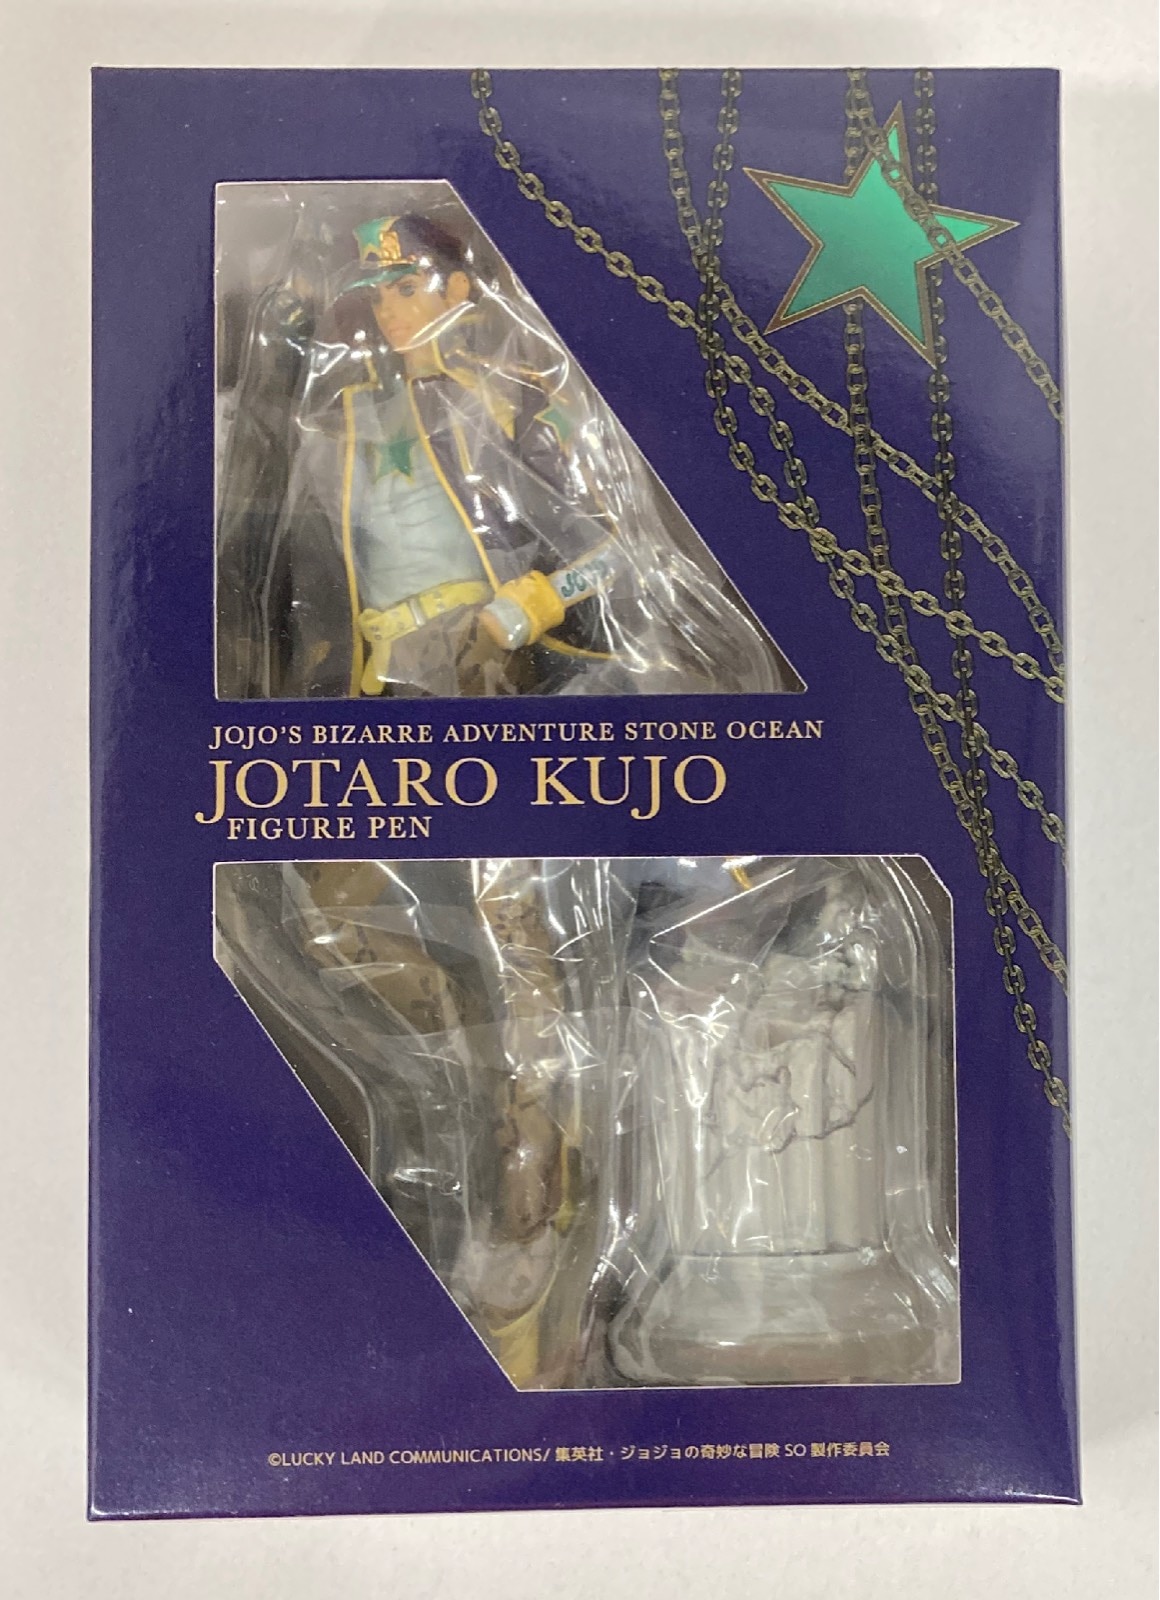 JoJo's Bizarre Adventure Stone Ocean - Jotaro Kujo Figure Pen